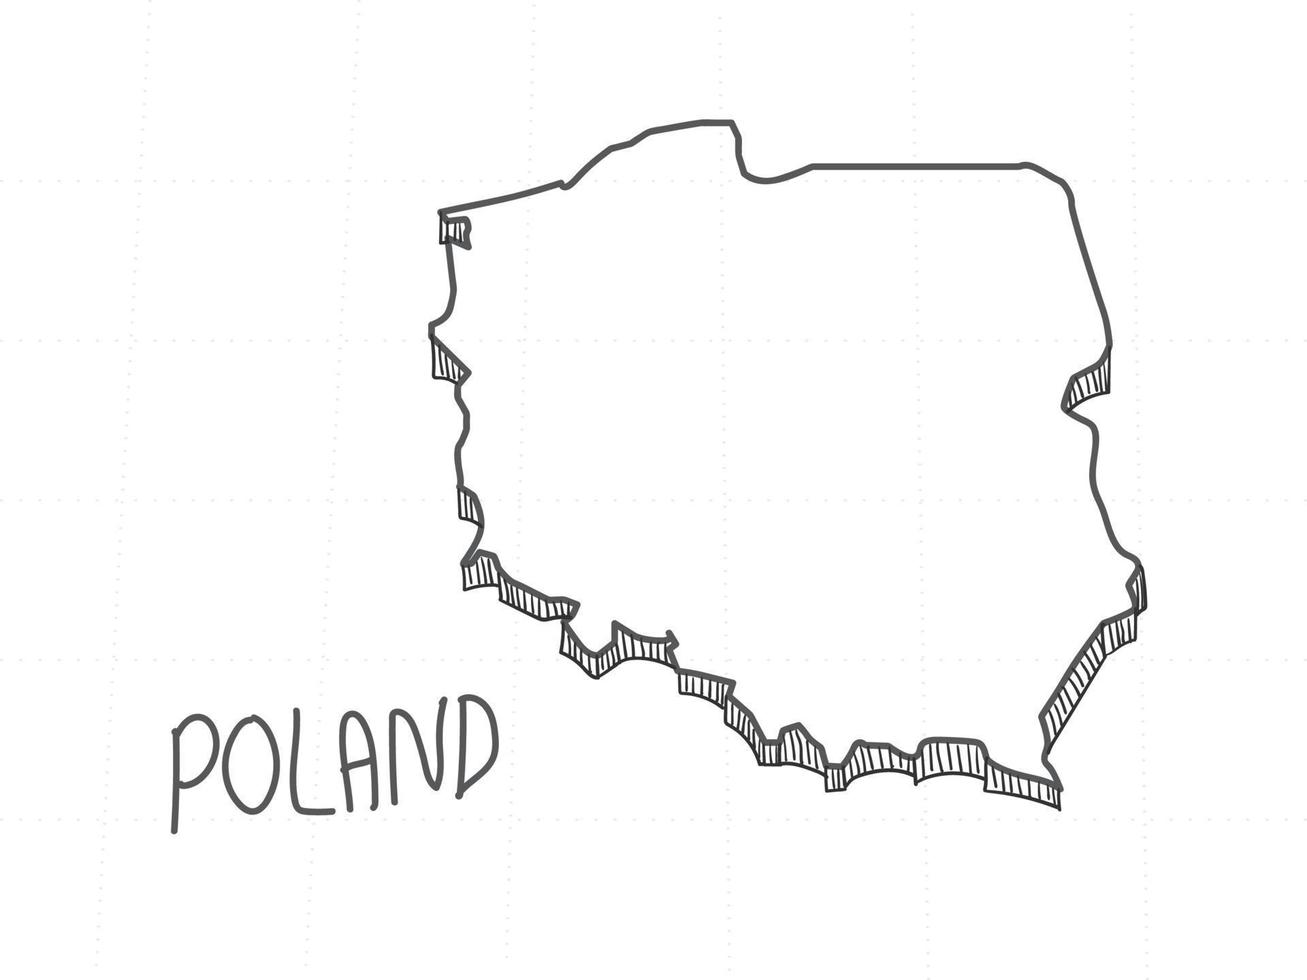 disegnato a mano della mappa 3d della polonia su sfondo bianco. vettore